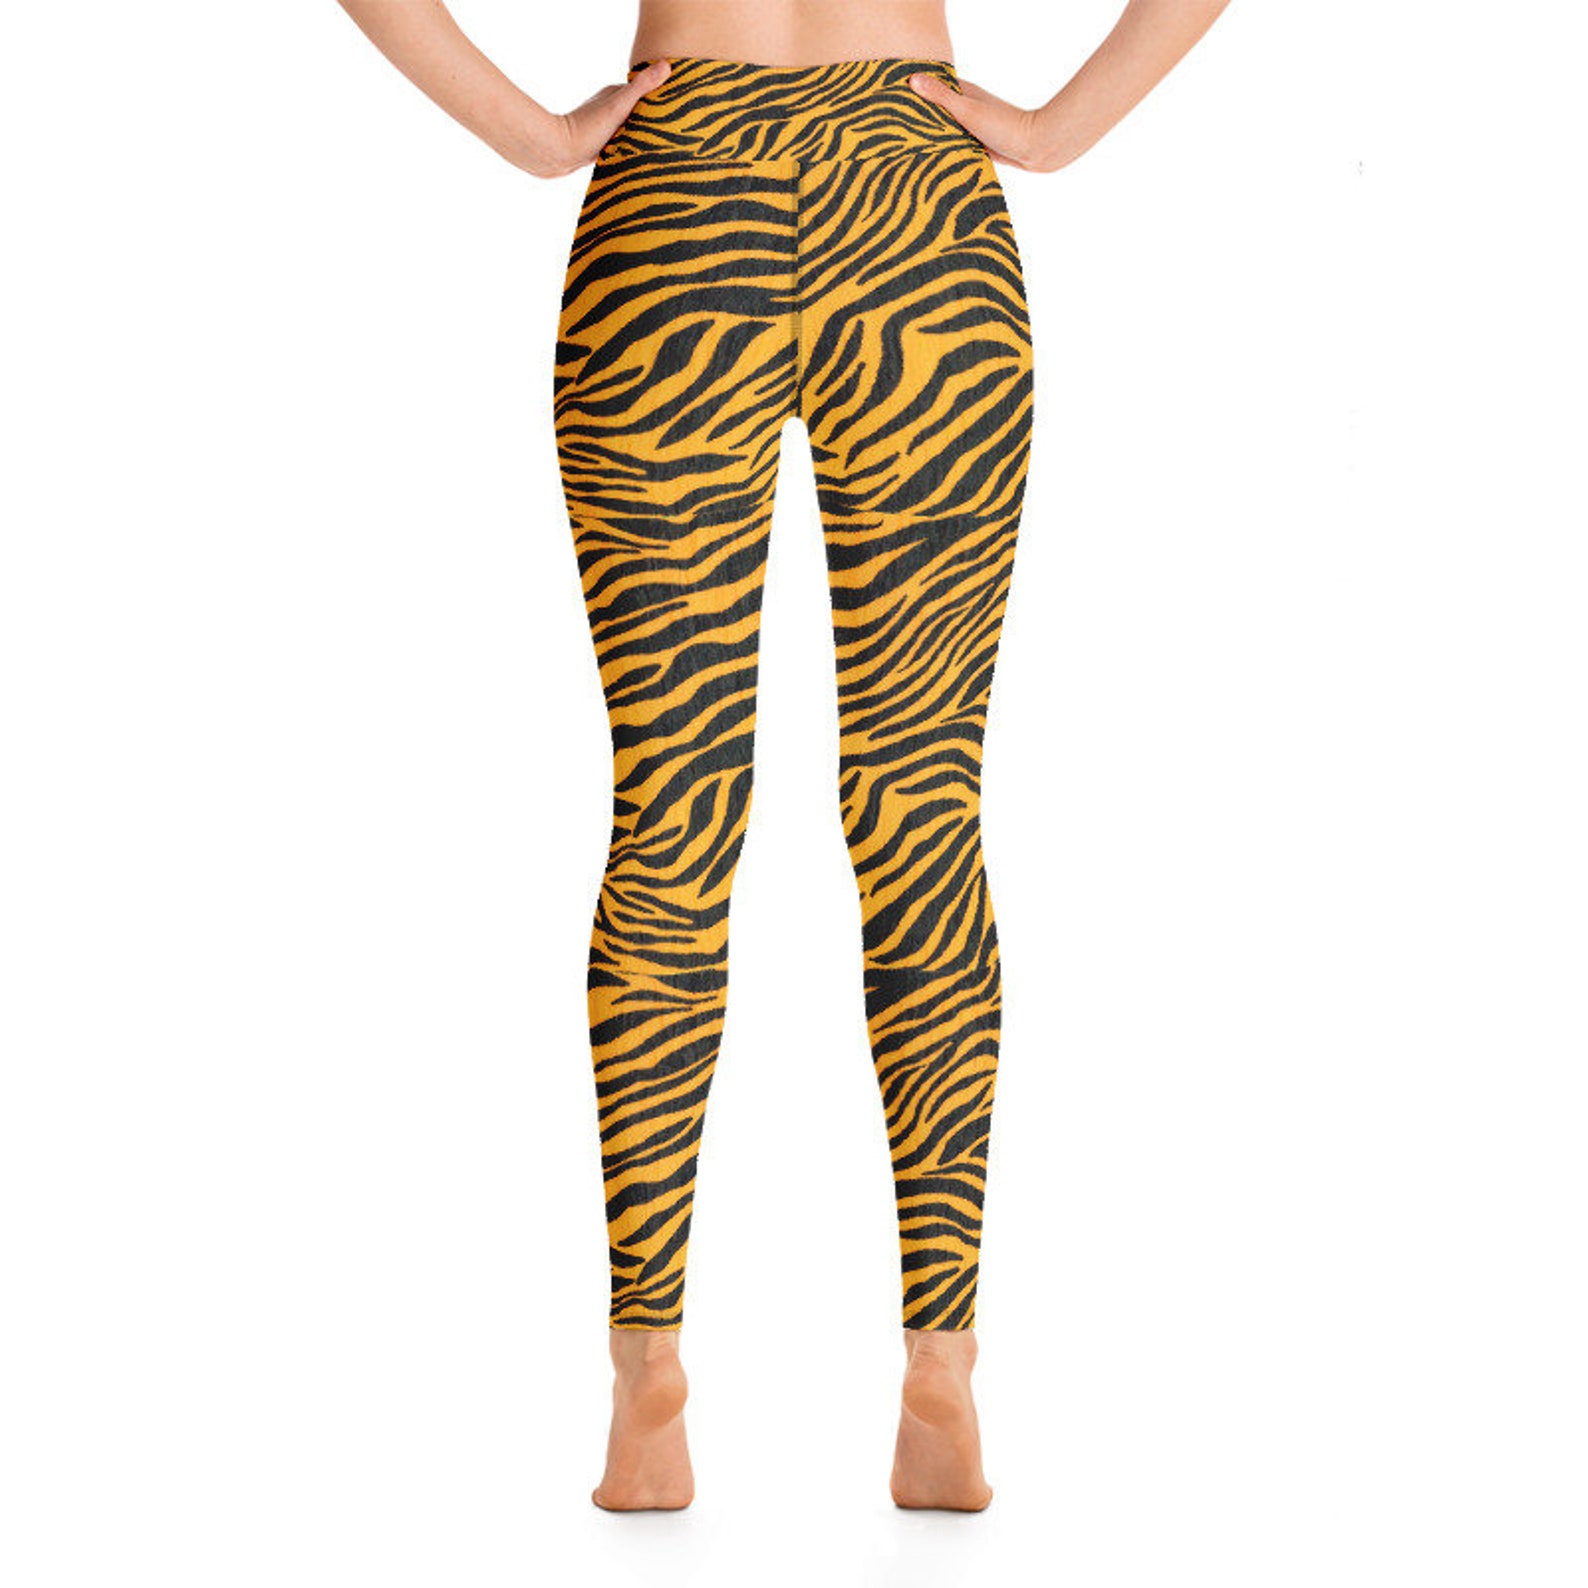 Zebra Yoga Leggings orange and black flattering trendy | Etsy